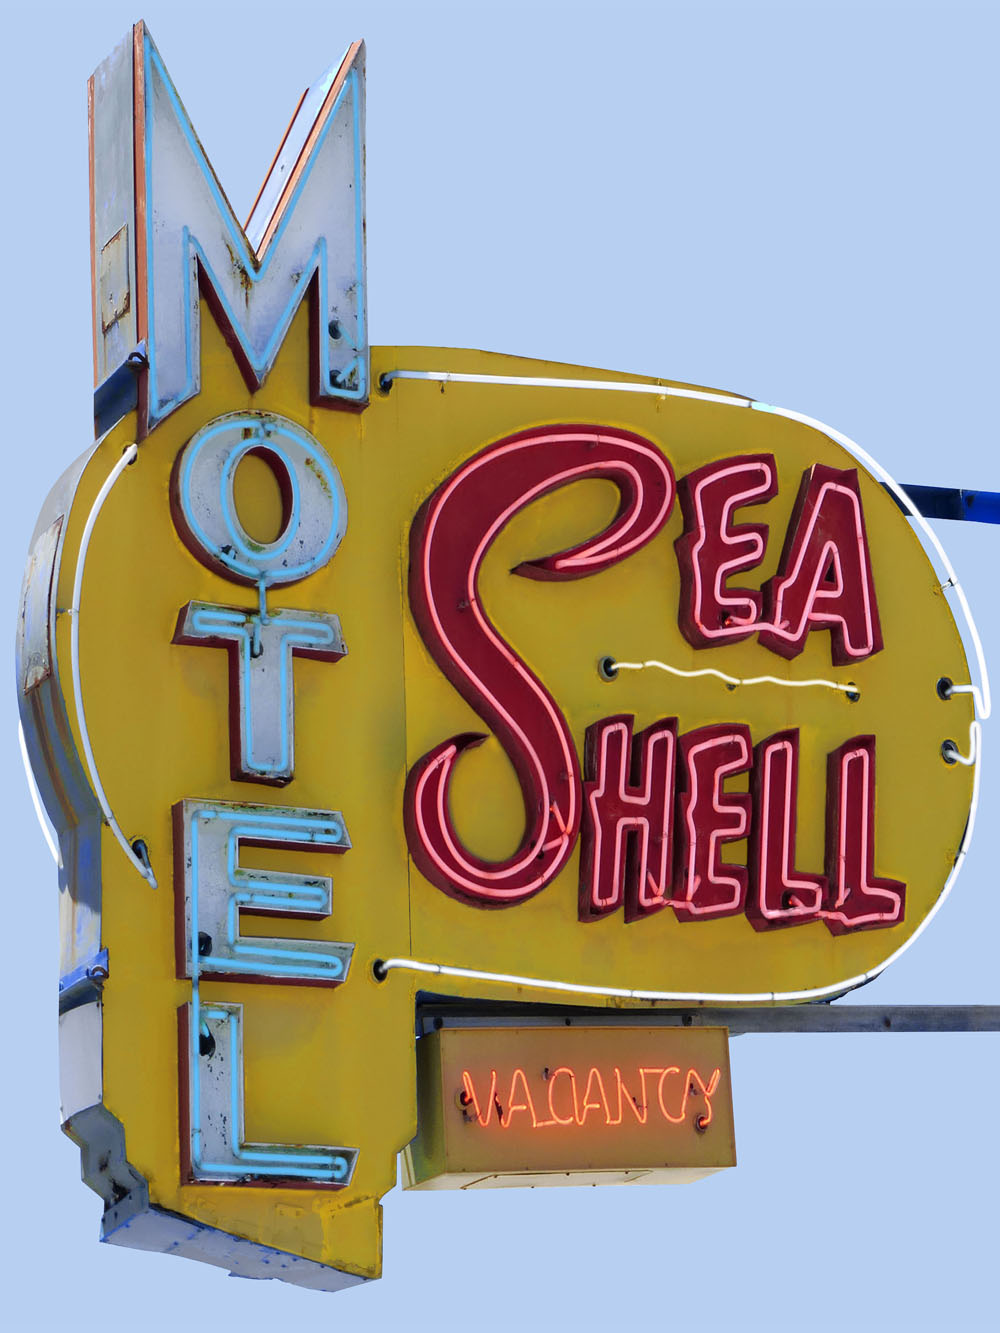 Sea Shell Motel